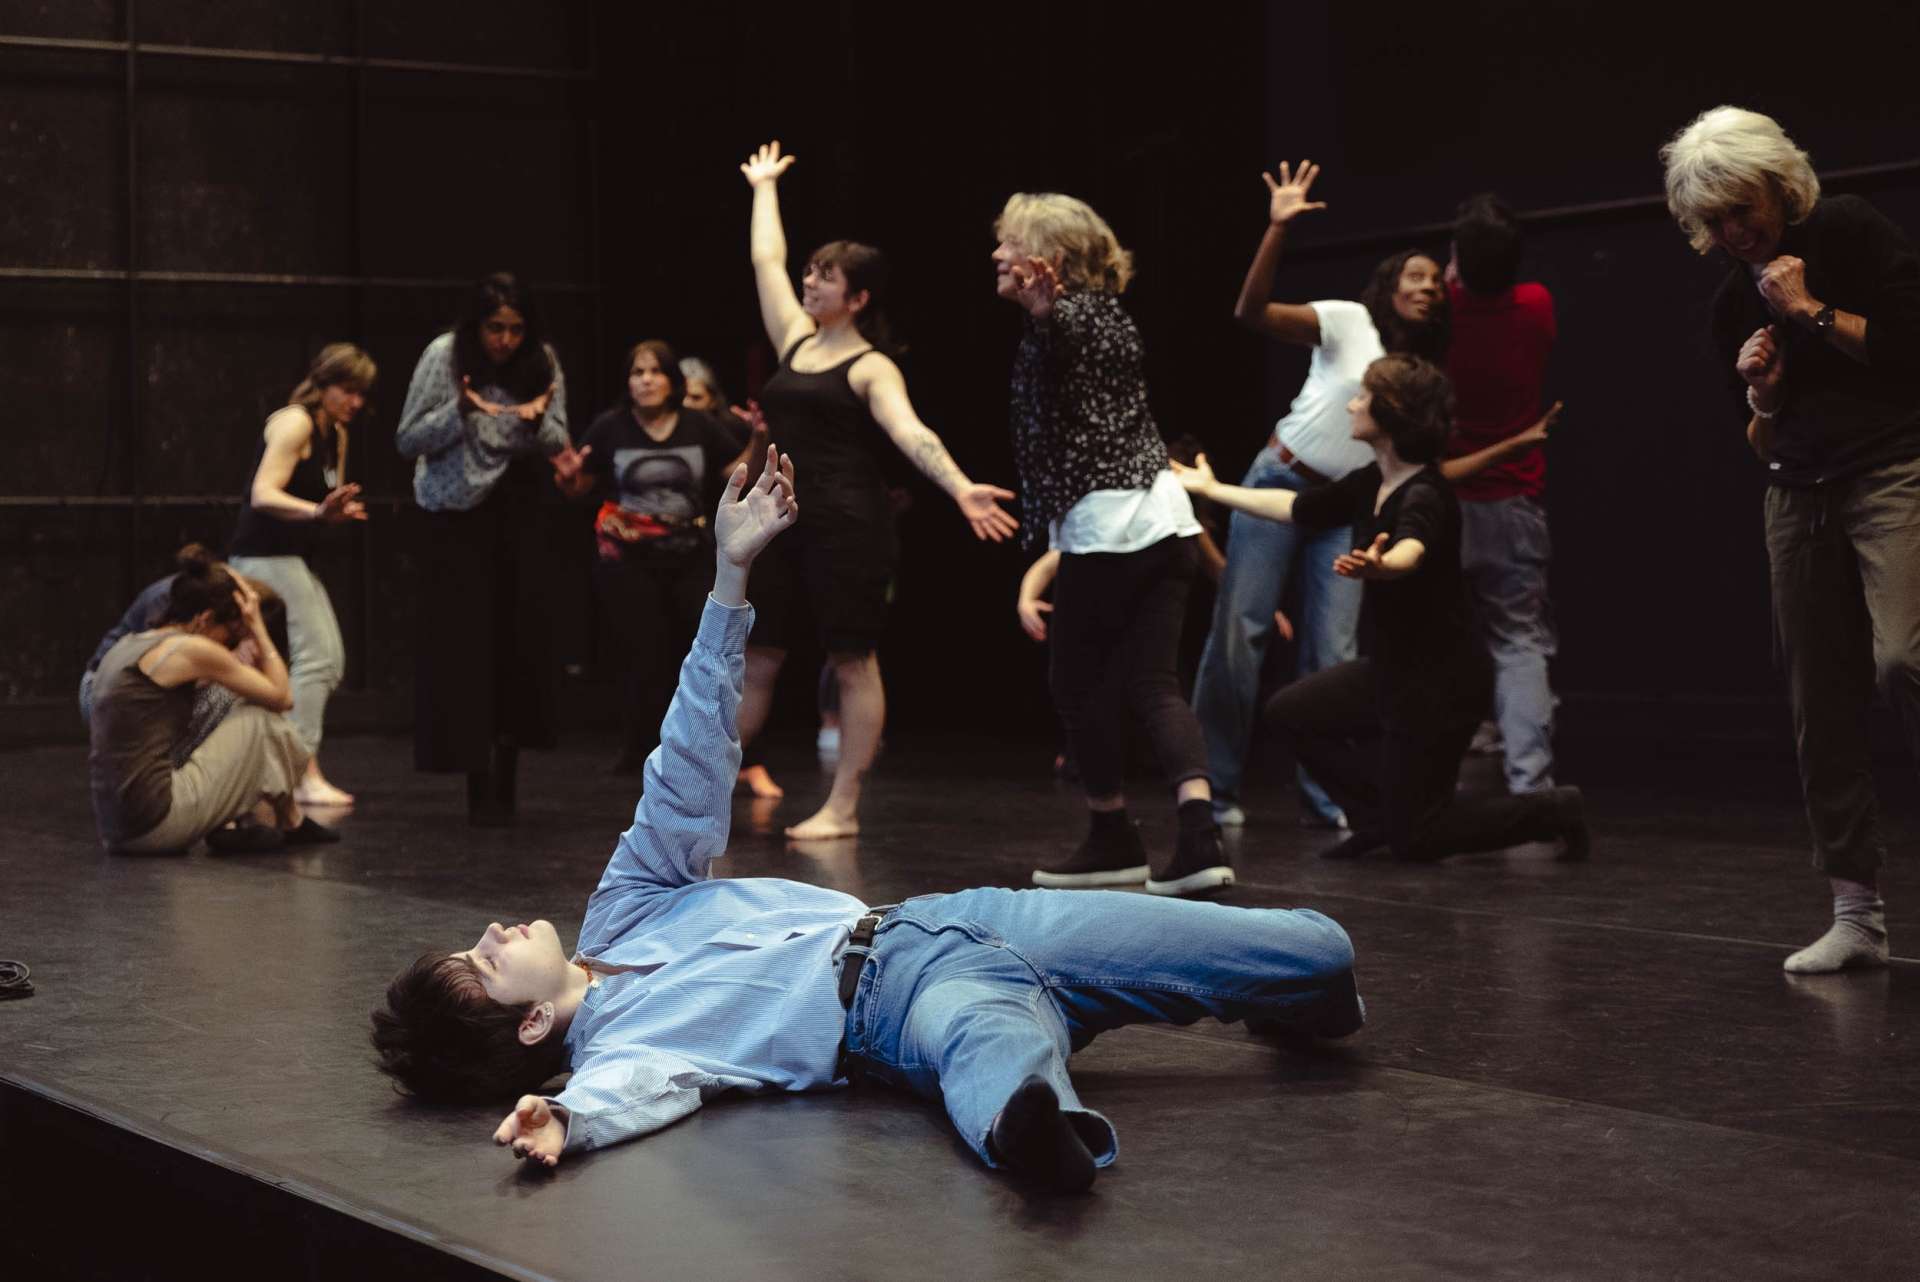 En bord de scène, une amateure est allongée avec un bras levé. En fond de scène, les autres participants au projet danse ou marche. 